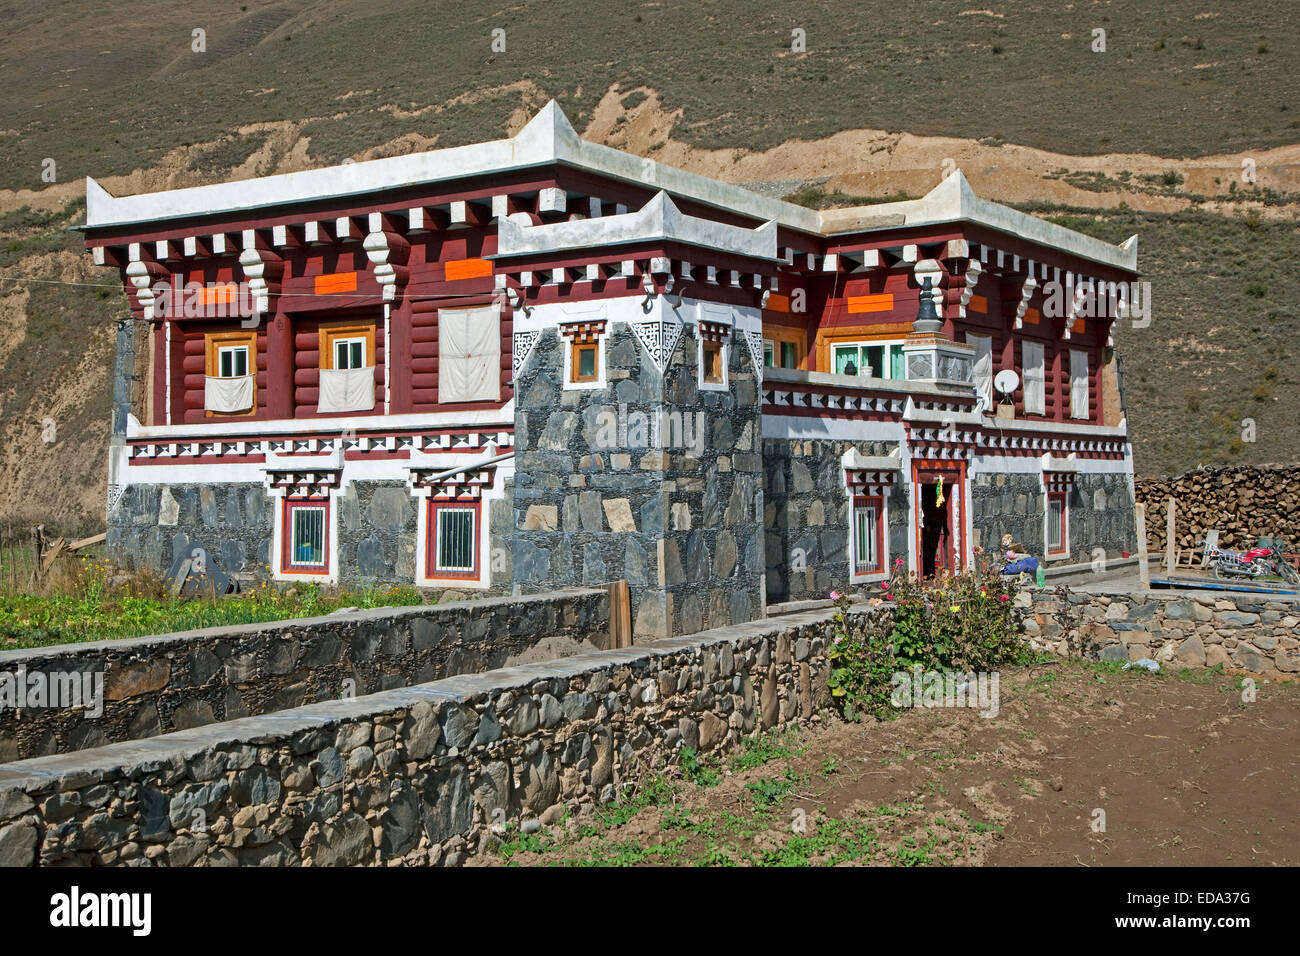 Tibetische Architektur Landschaft zeigt moderne Granit Haus mit typischen Flachdach und kleinen Wachturm, Sichuan, China Stockfoto